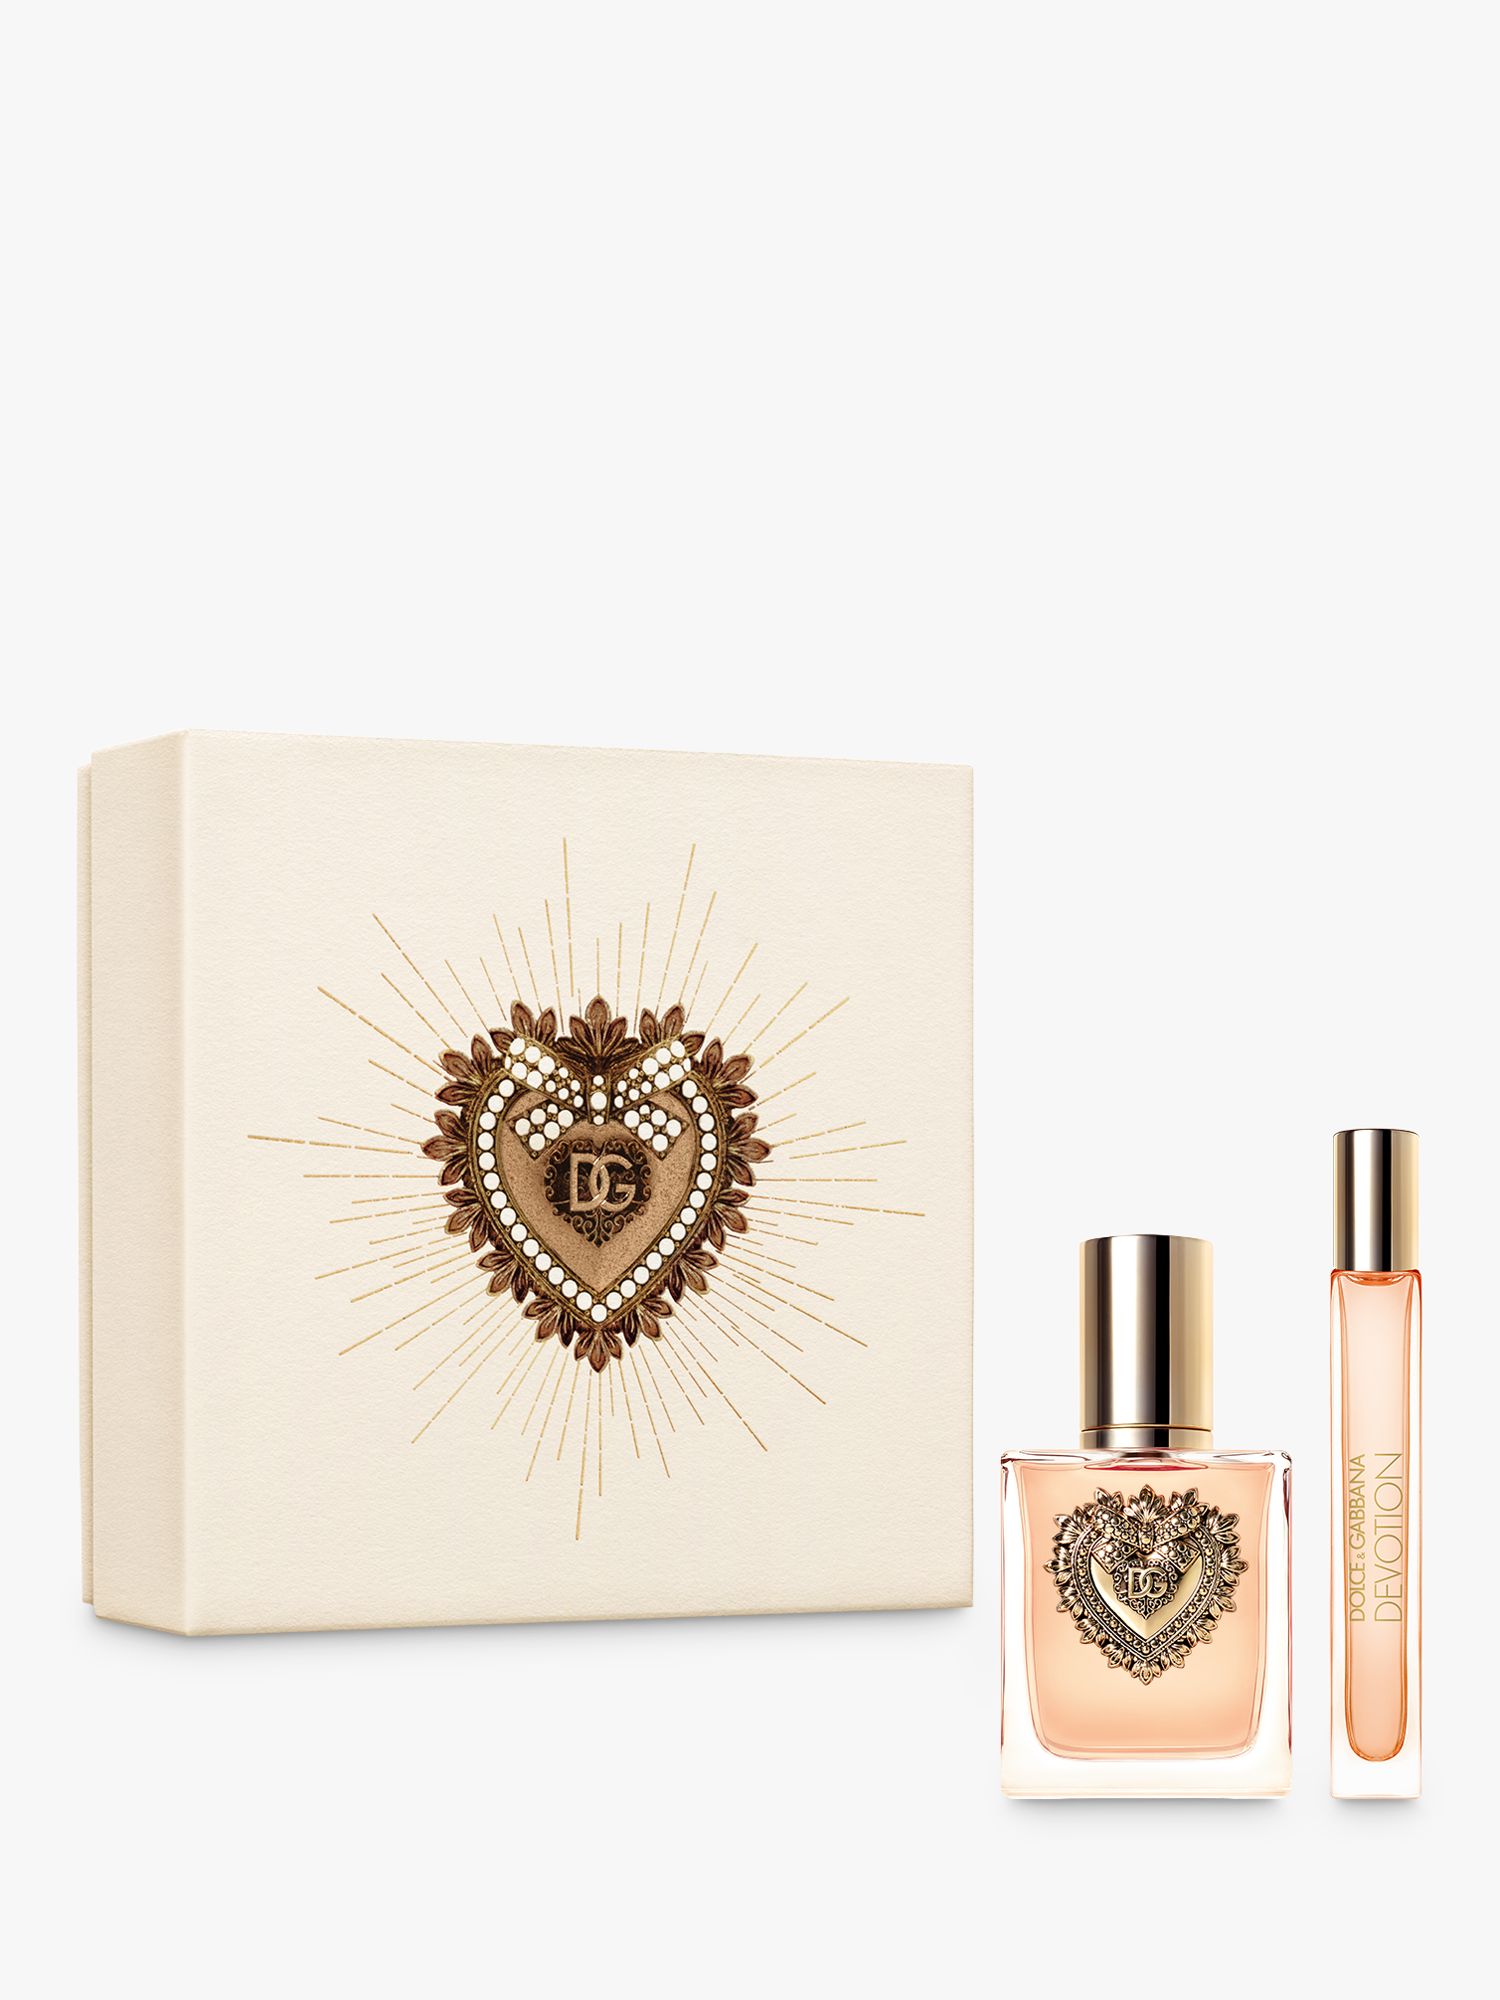 Dolce & Gabbana Devotion Eau de Parfum, 100ml at John Lewis &